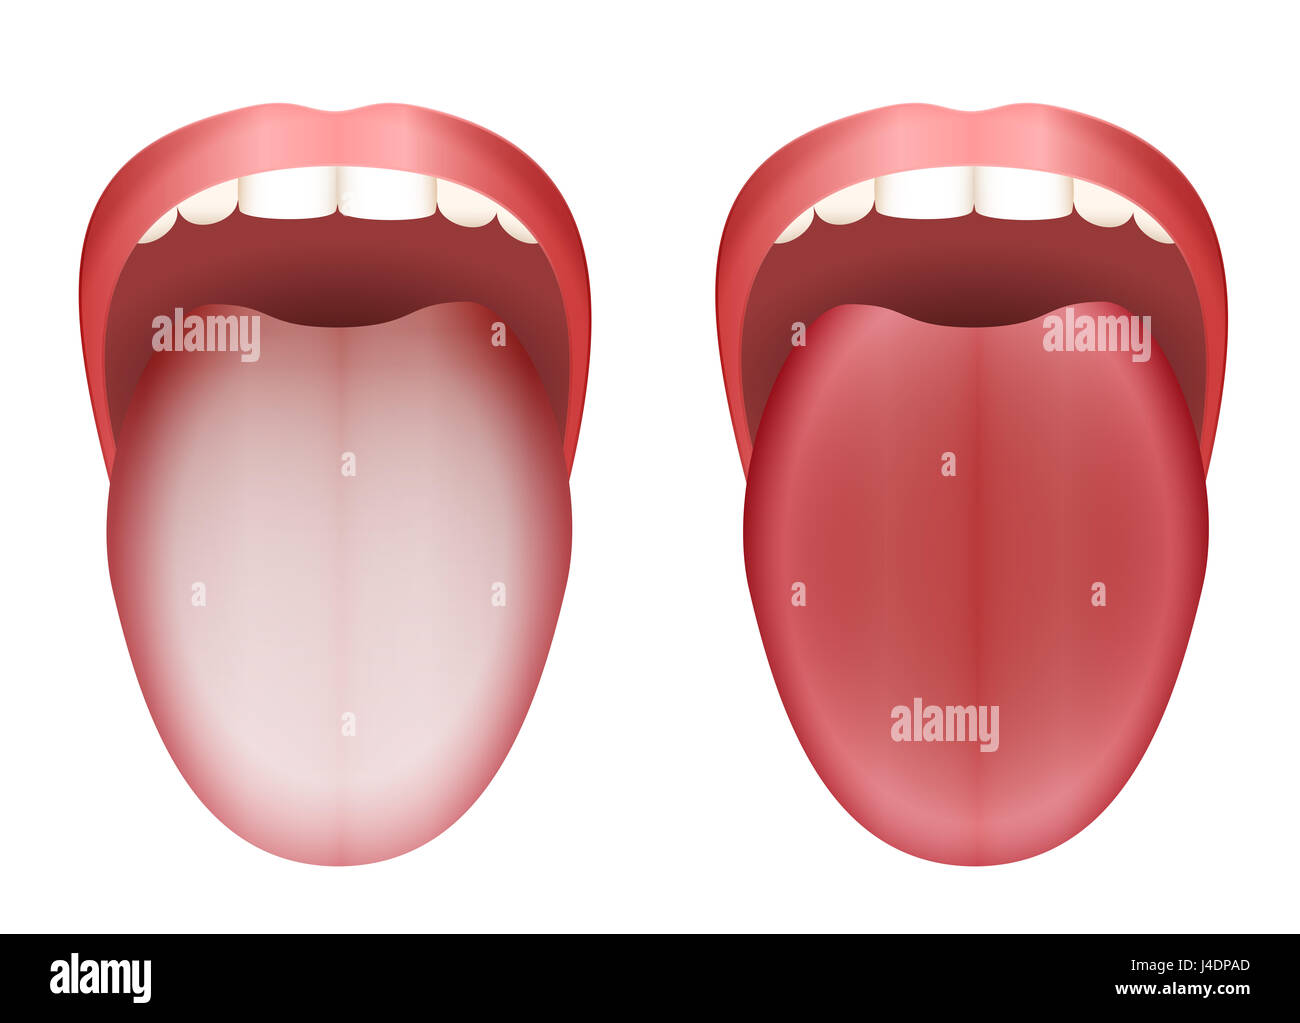 Langue blanche enduite et nettoyer la langue en bonne santé par comparaison - illustration sur fond blanc. Banque D'Images